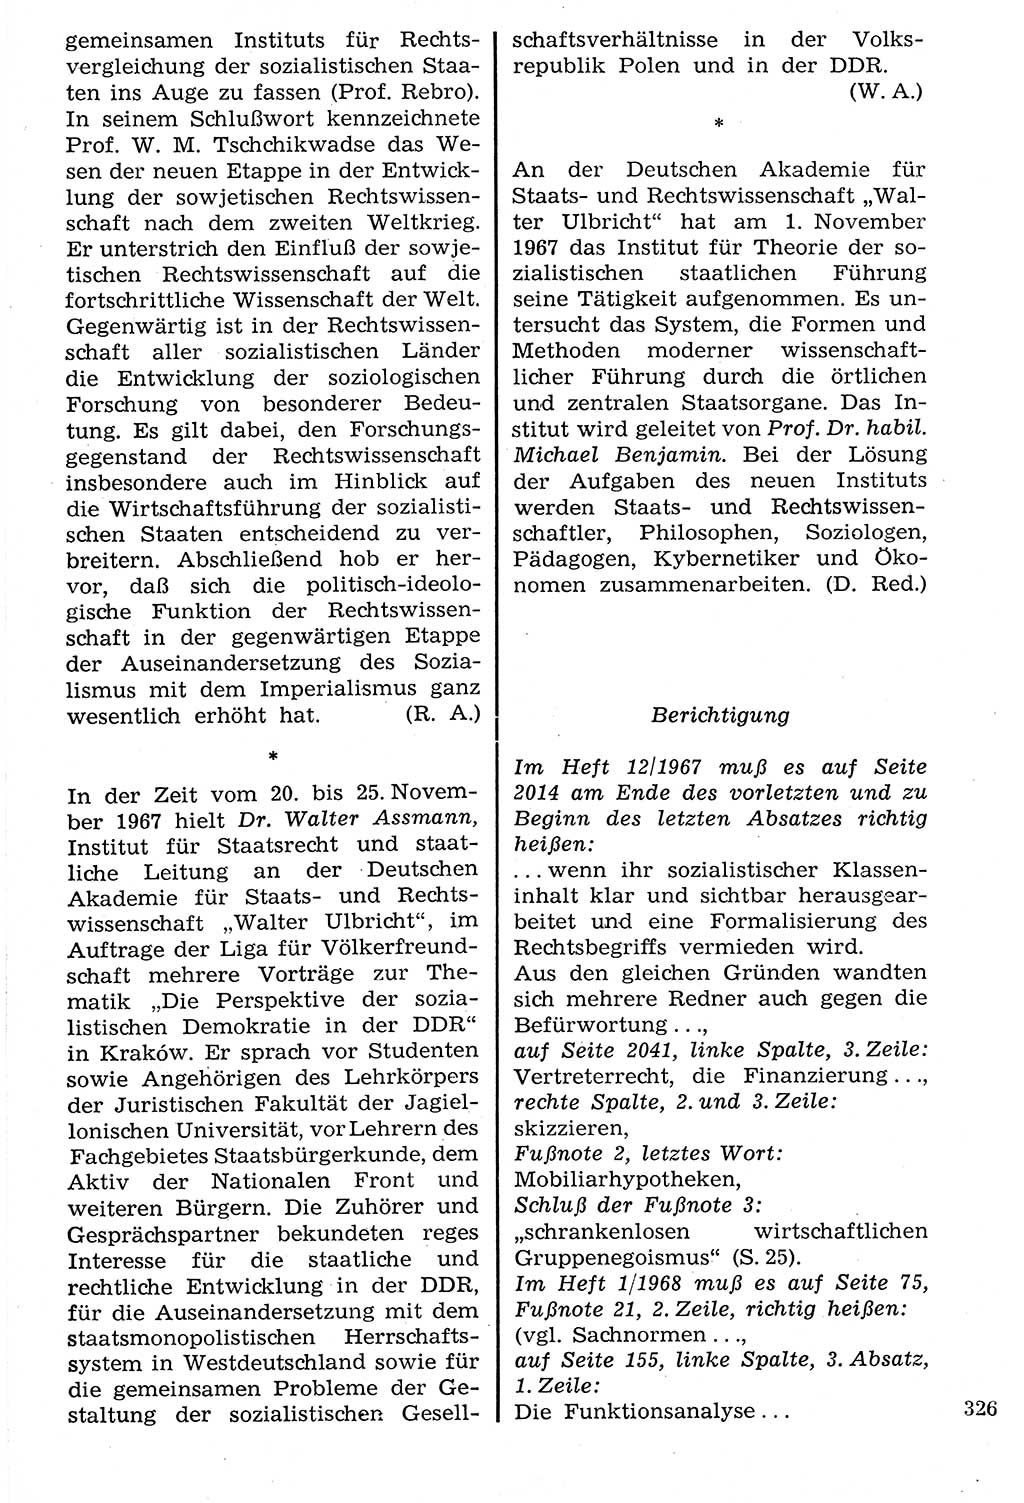 Staat und Recht (StuR), 17. Jahrgang [Deutsche Demokratische Republik (DDR)] 1968, Seite 326 (StuR DDR 1968, S. 326)